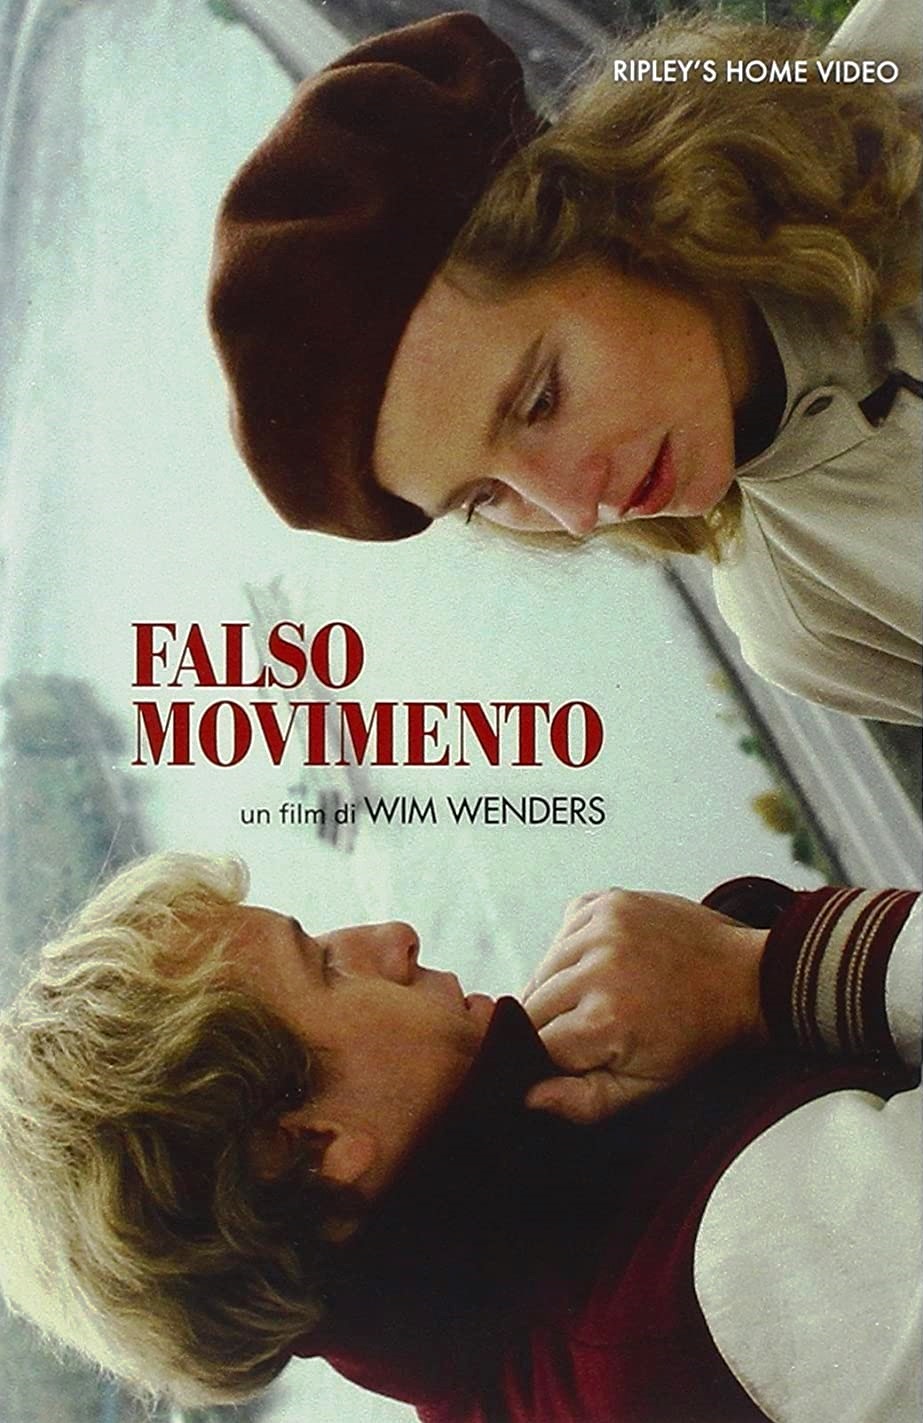 Falso movimento (1975)